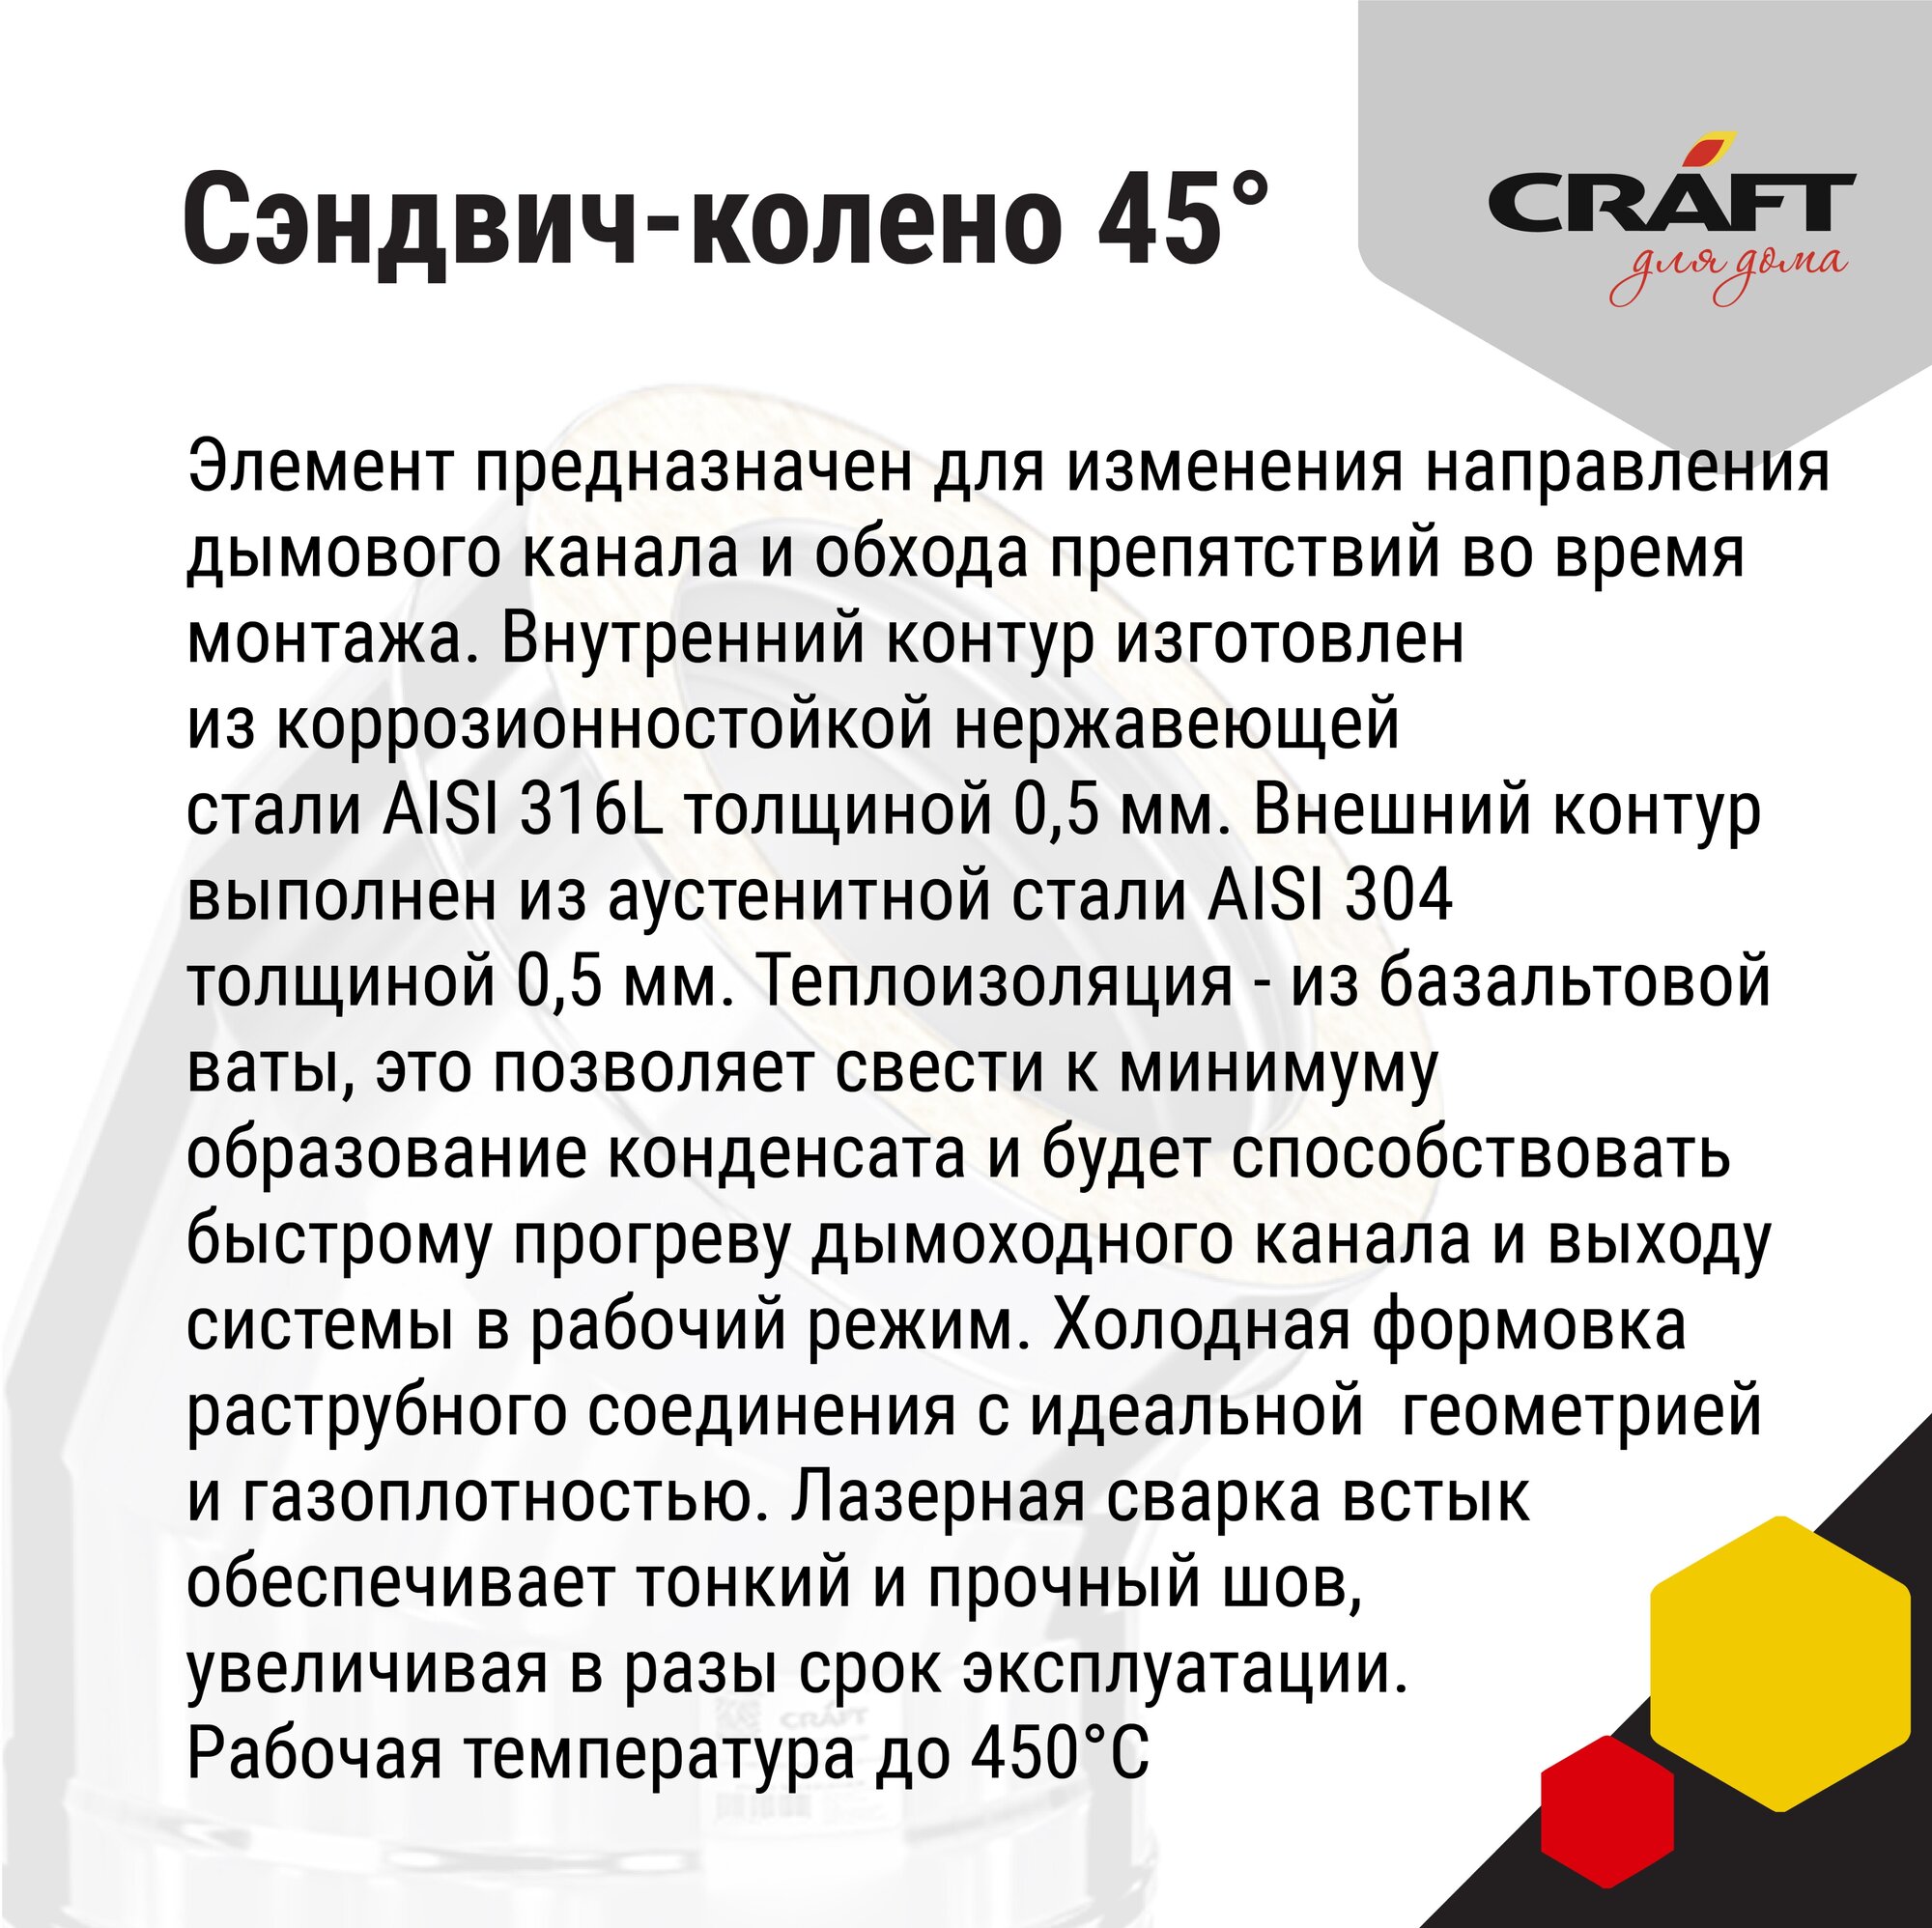 Craft GS-25 сэндвич-колено 45° (316/0,5/304/0,5) Ф150х200 - фотография № 4